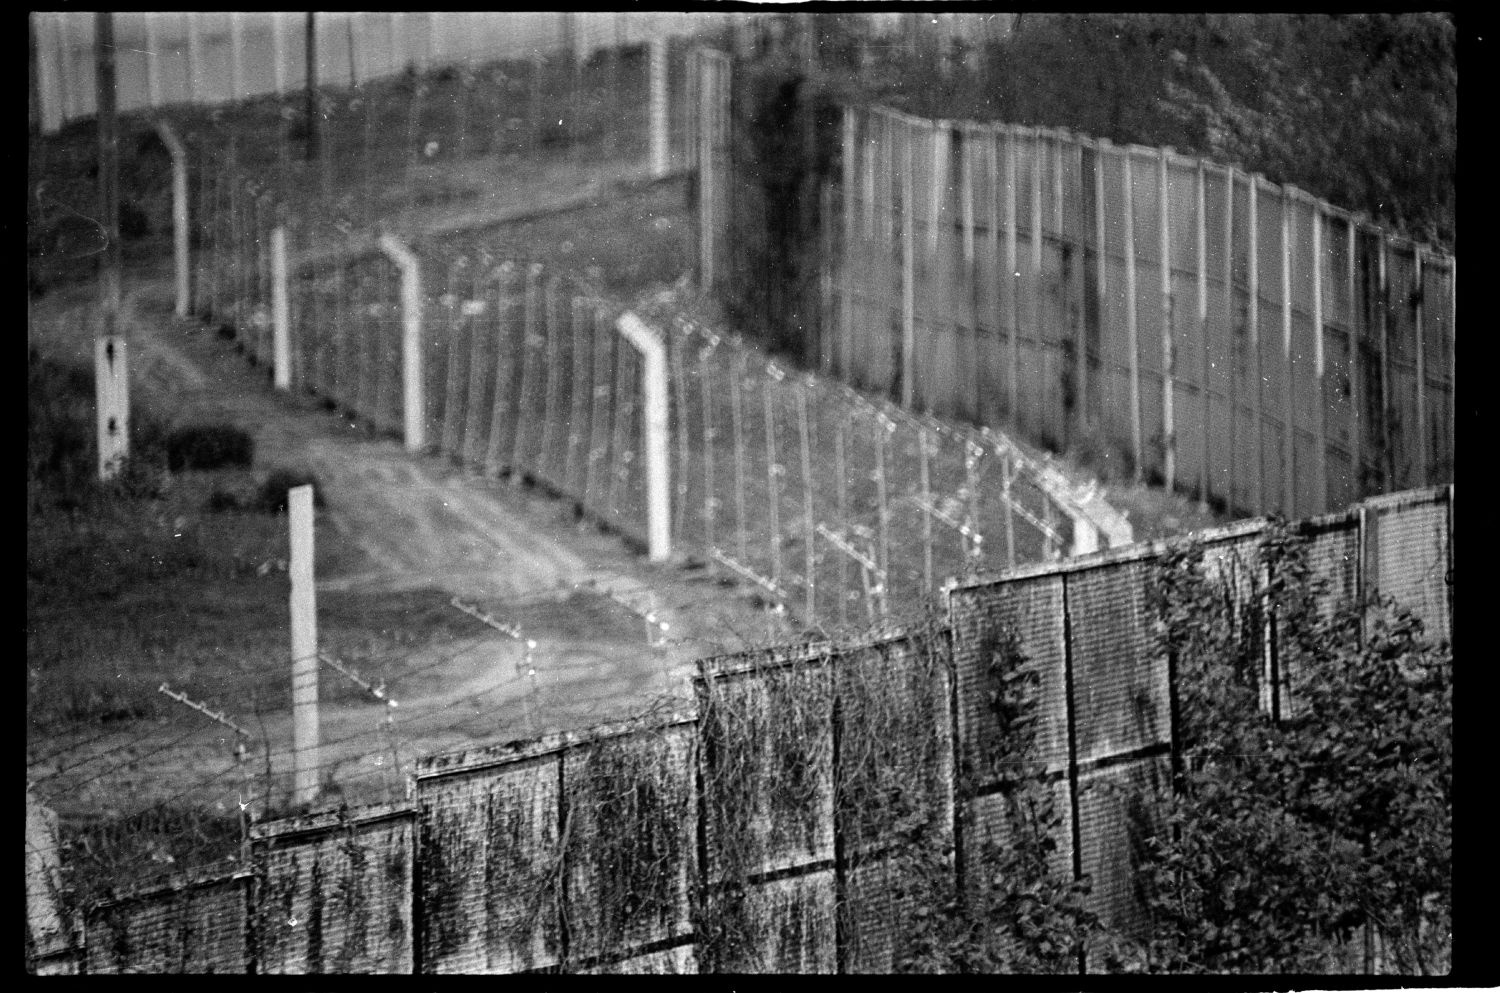 s/w-Fotografie: Grenzanlagen auf der Glienicker Brücke zwischen West-Berlin und Potsdam (AlliiertenMuseum/U.S. Army Photograph Public Domain Mark)